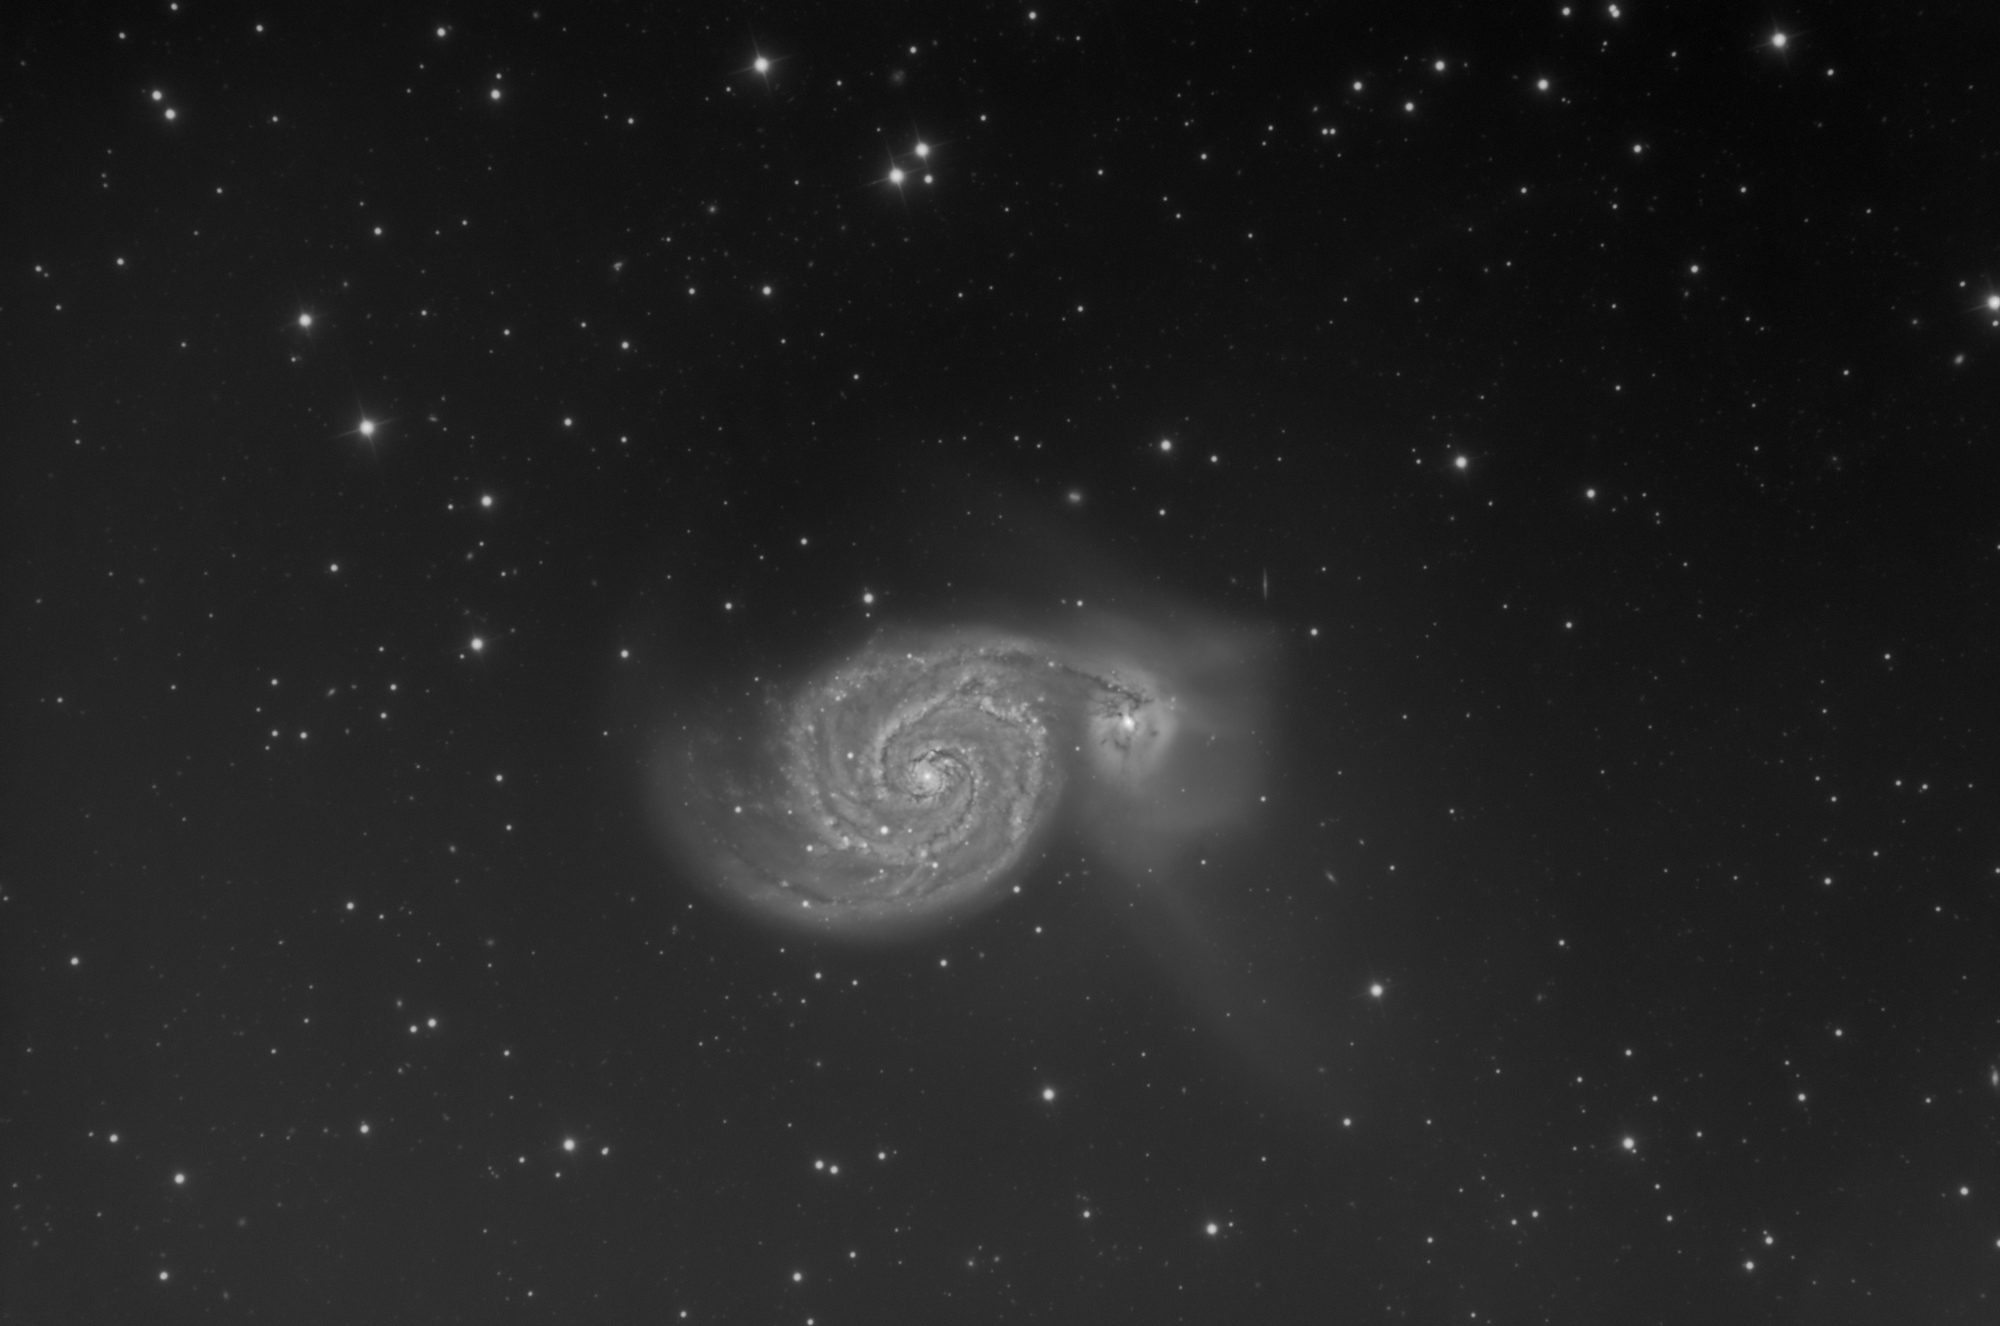 M51/NGC5194 